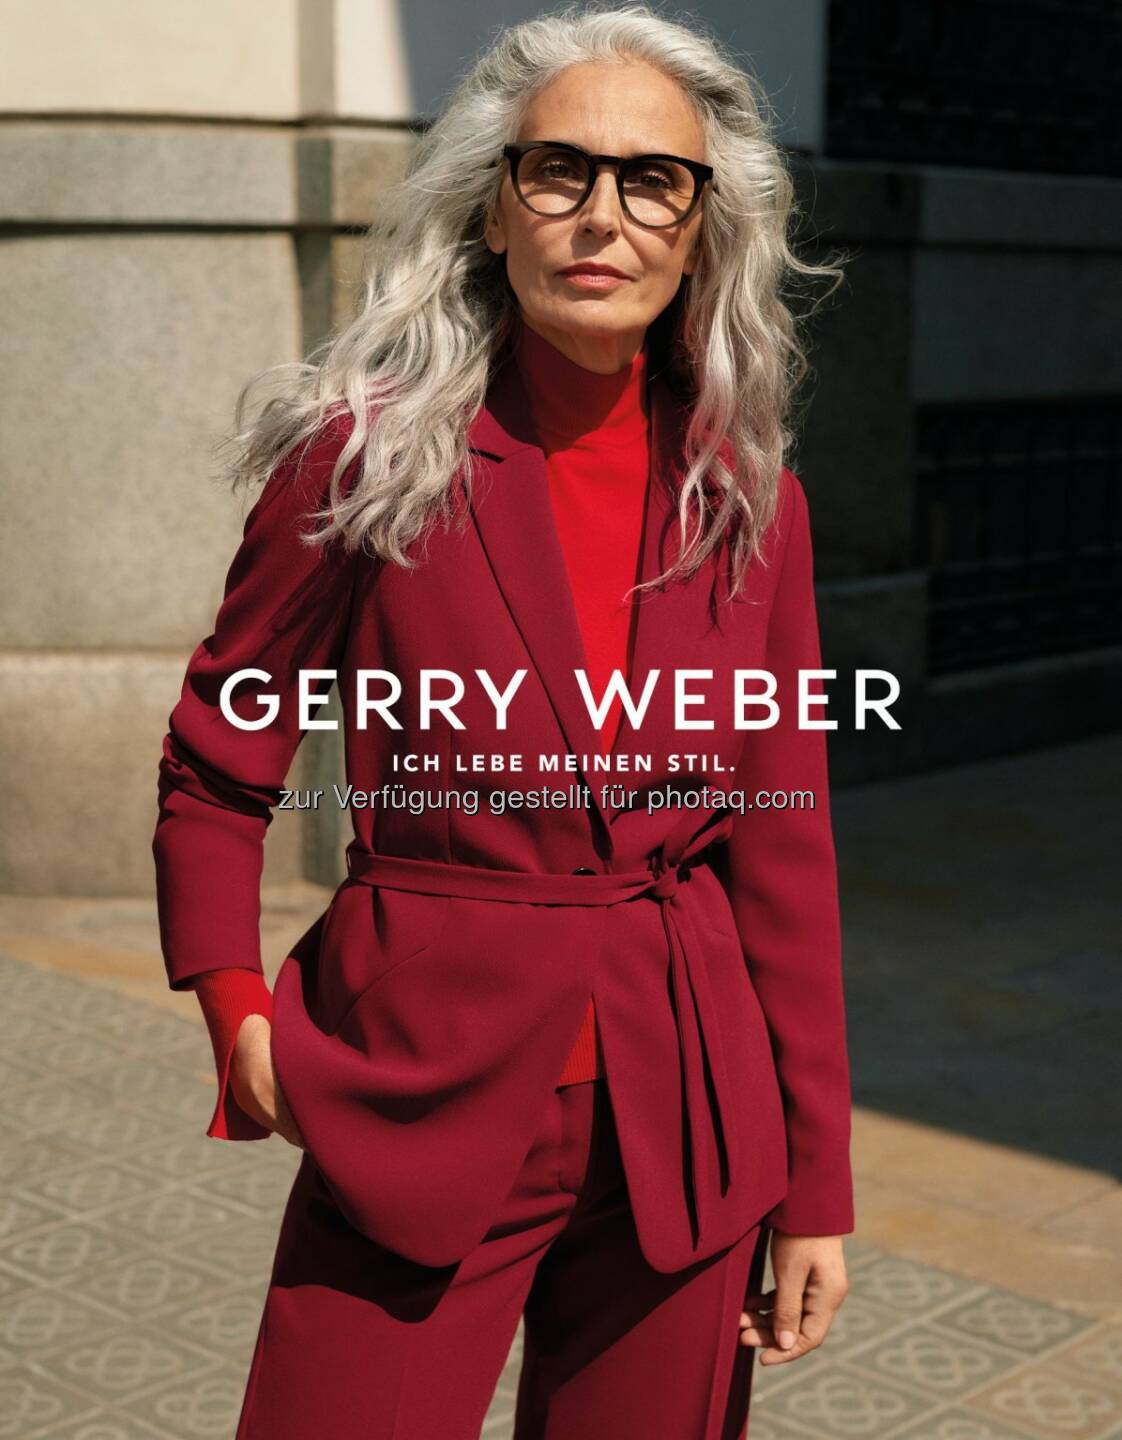 Gerry Weber International AG: Gerry Weber wirbt erstmalig mit Best-Ager-Model und startet optimistisch mit breit angelegter Kampagne in die Herbst/Winter-Saison (Bild: Gerry Weber International AG)